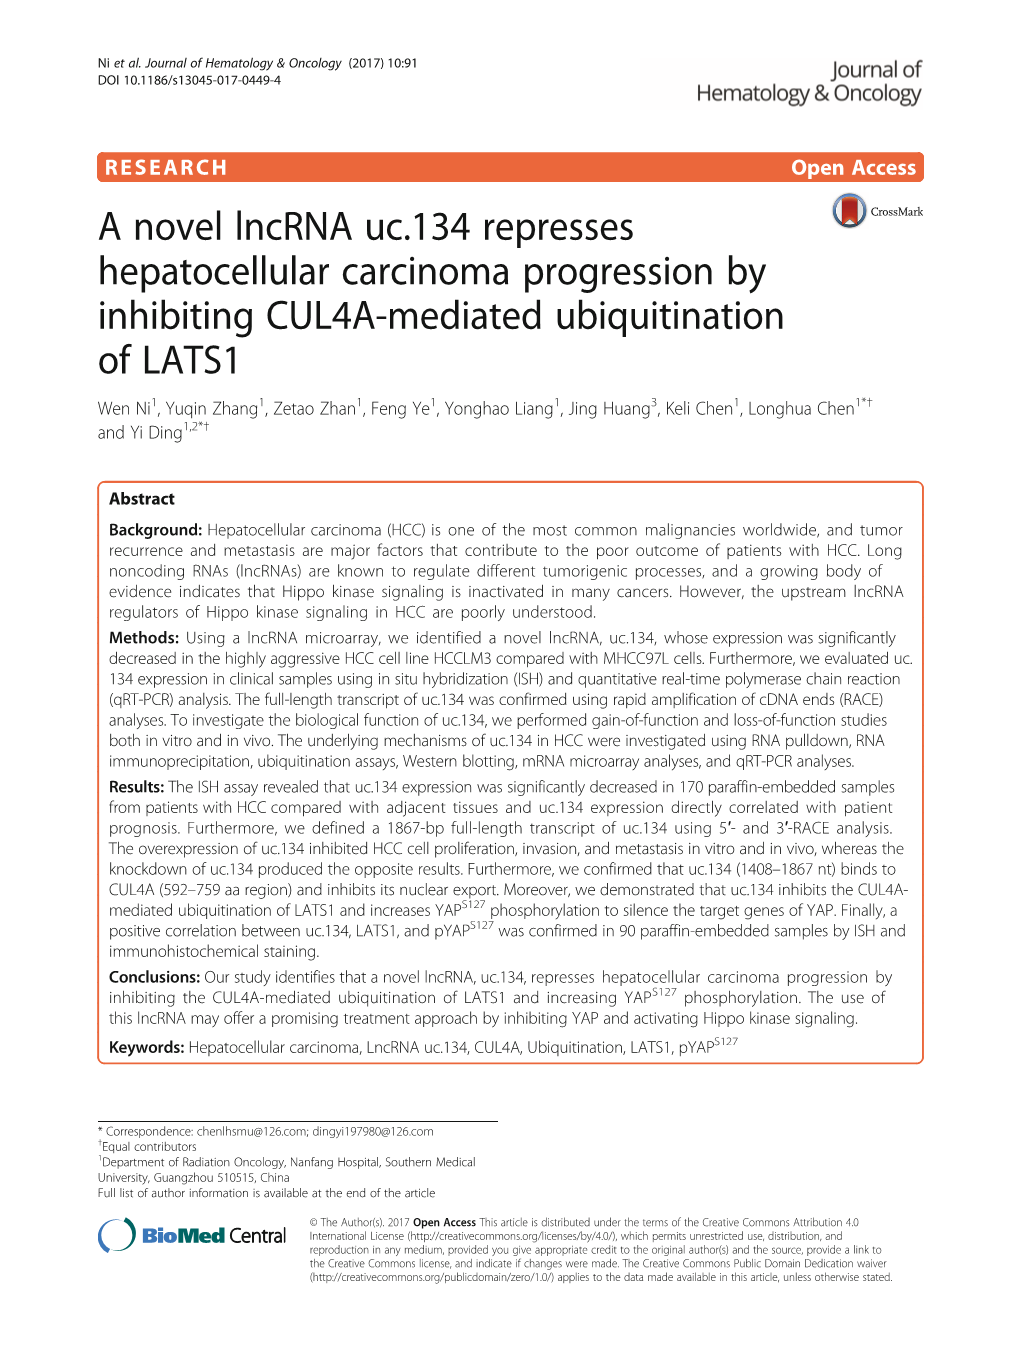 A Novel Lncrna Uc.134 Represses Hepatocellular Carcinoma